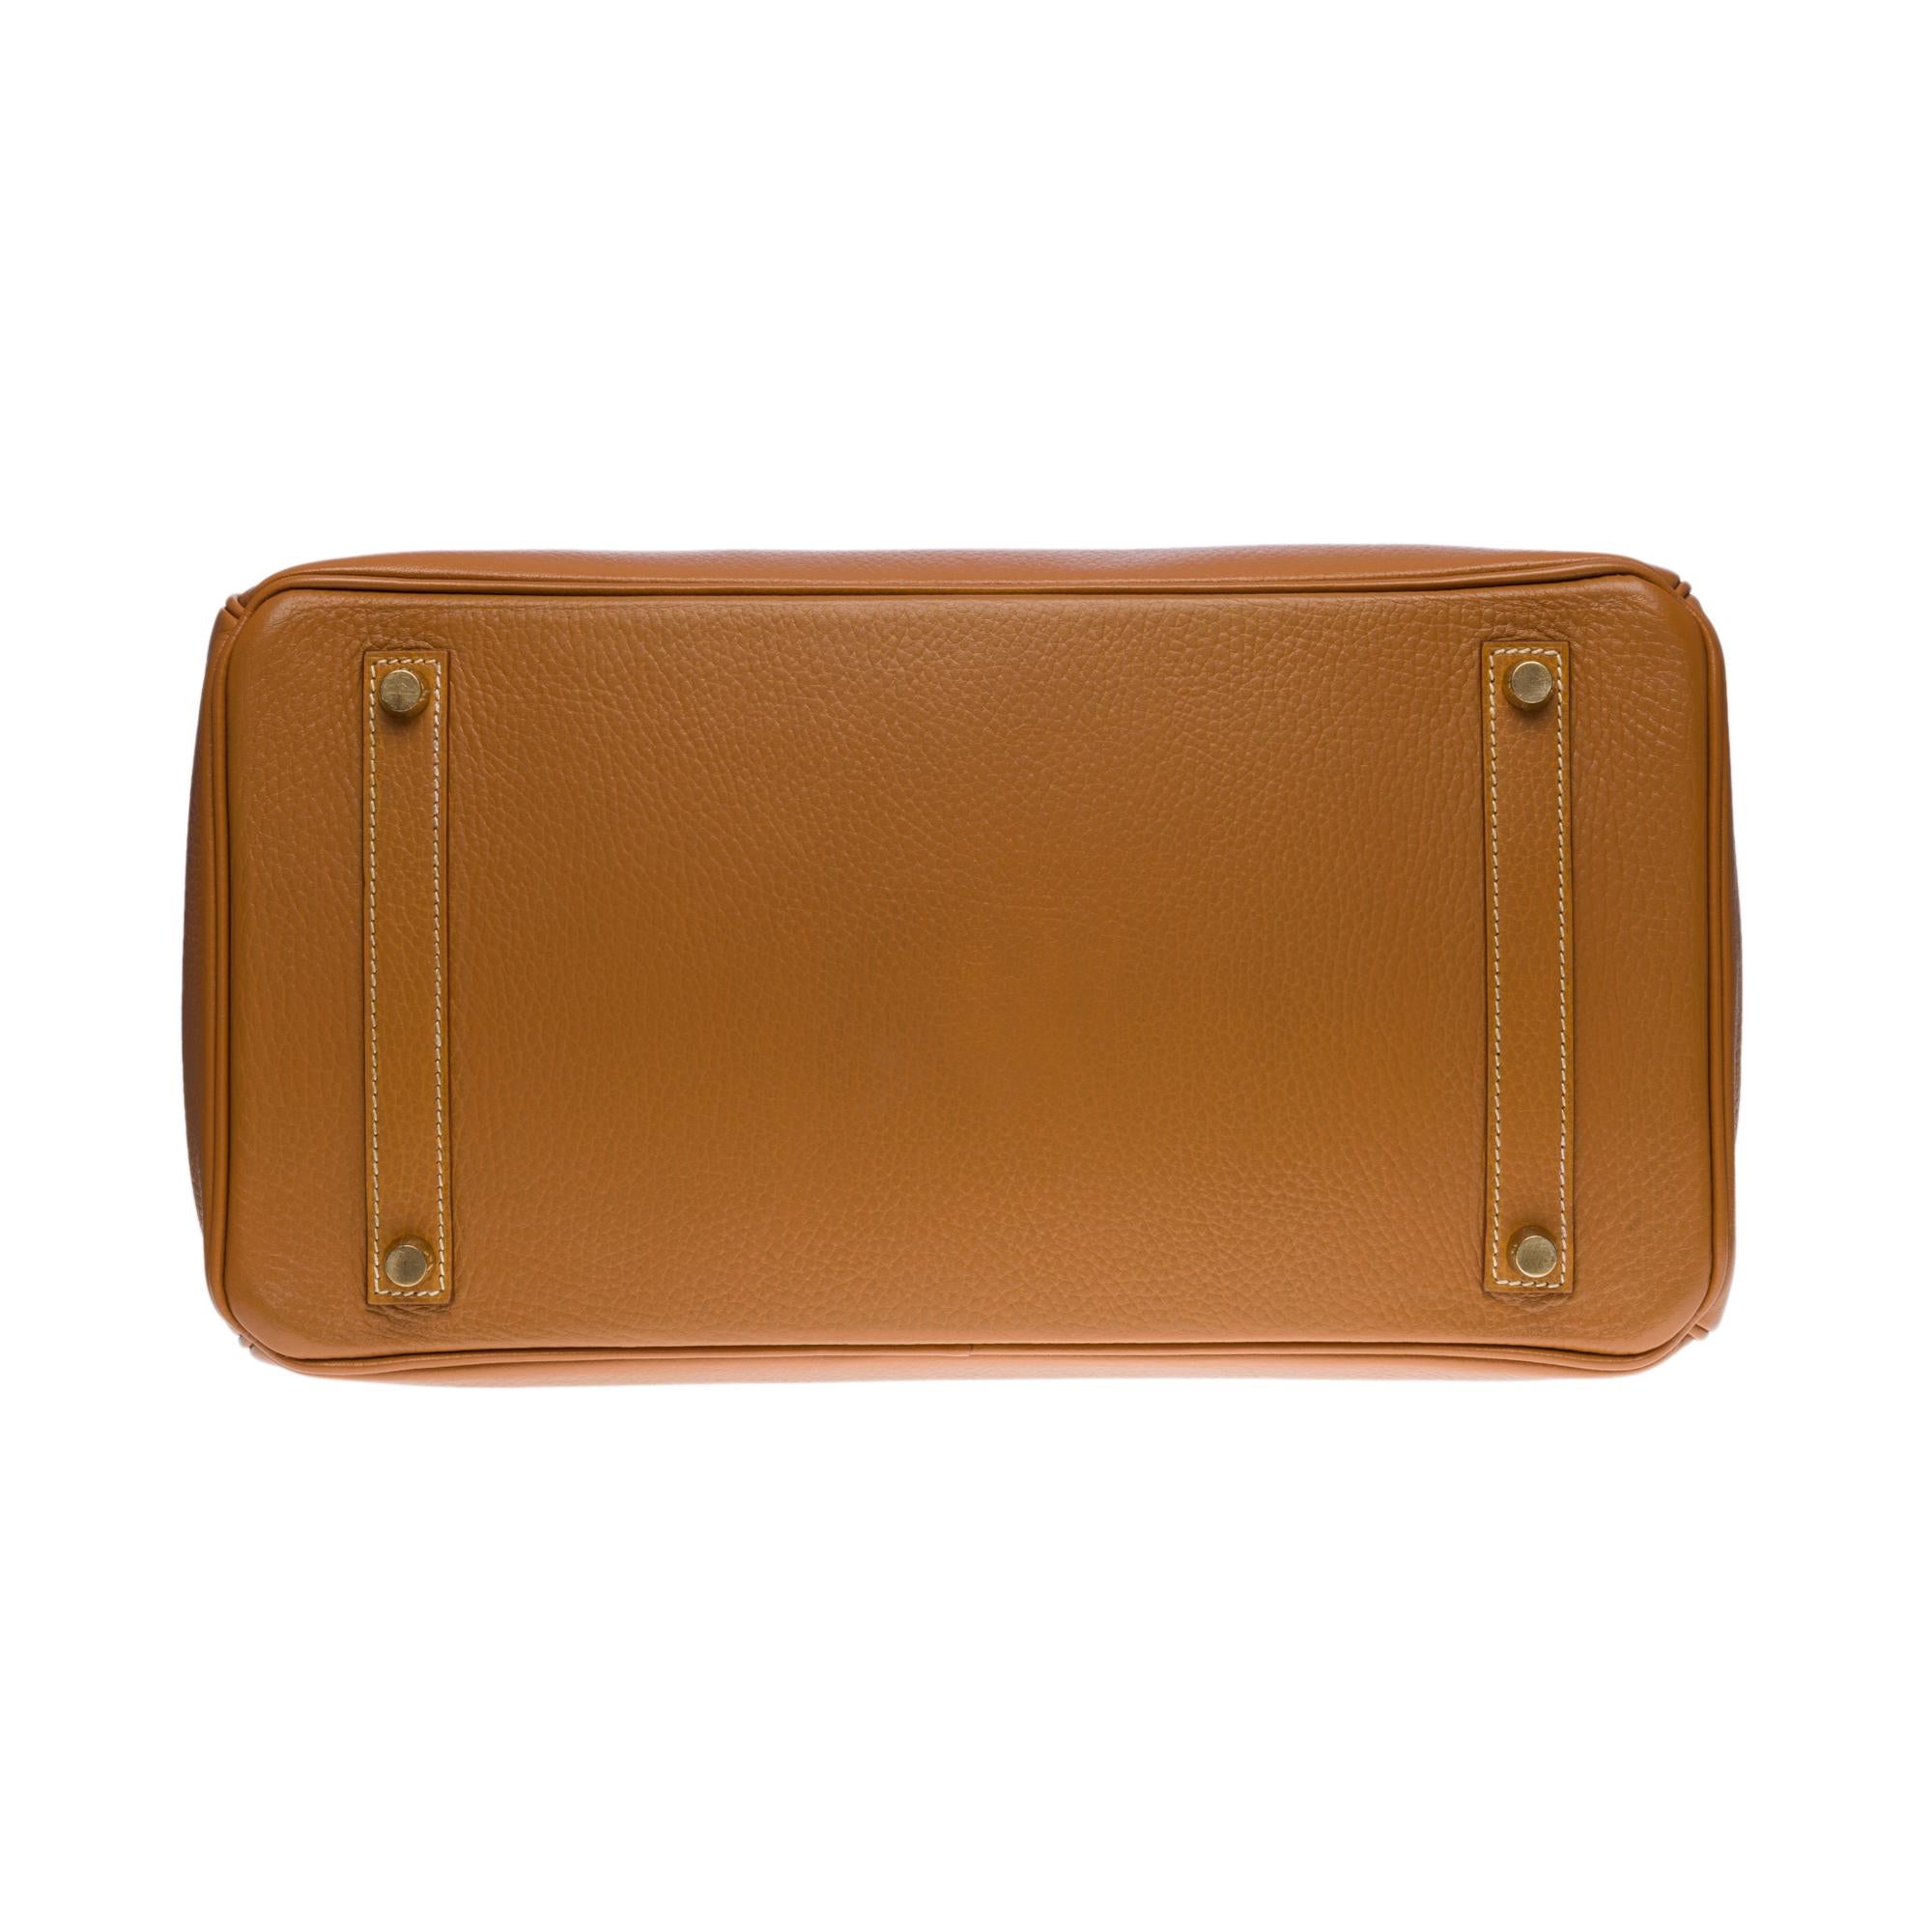 Amazing Hermès Birkin 35 handbag in Gold Vache Ardennes leather, GHW 4